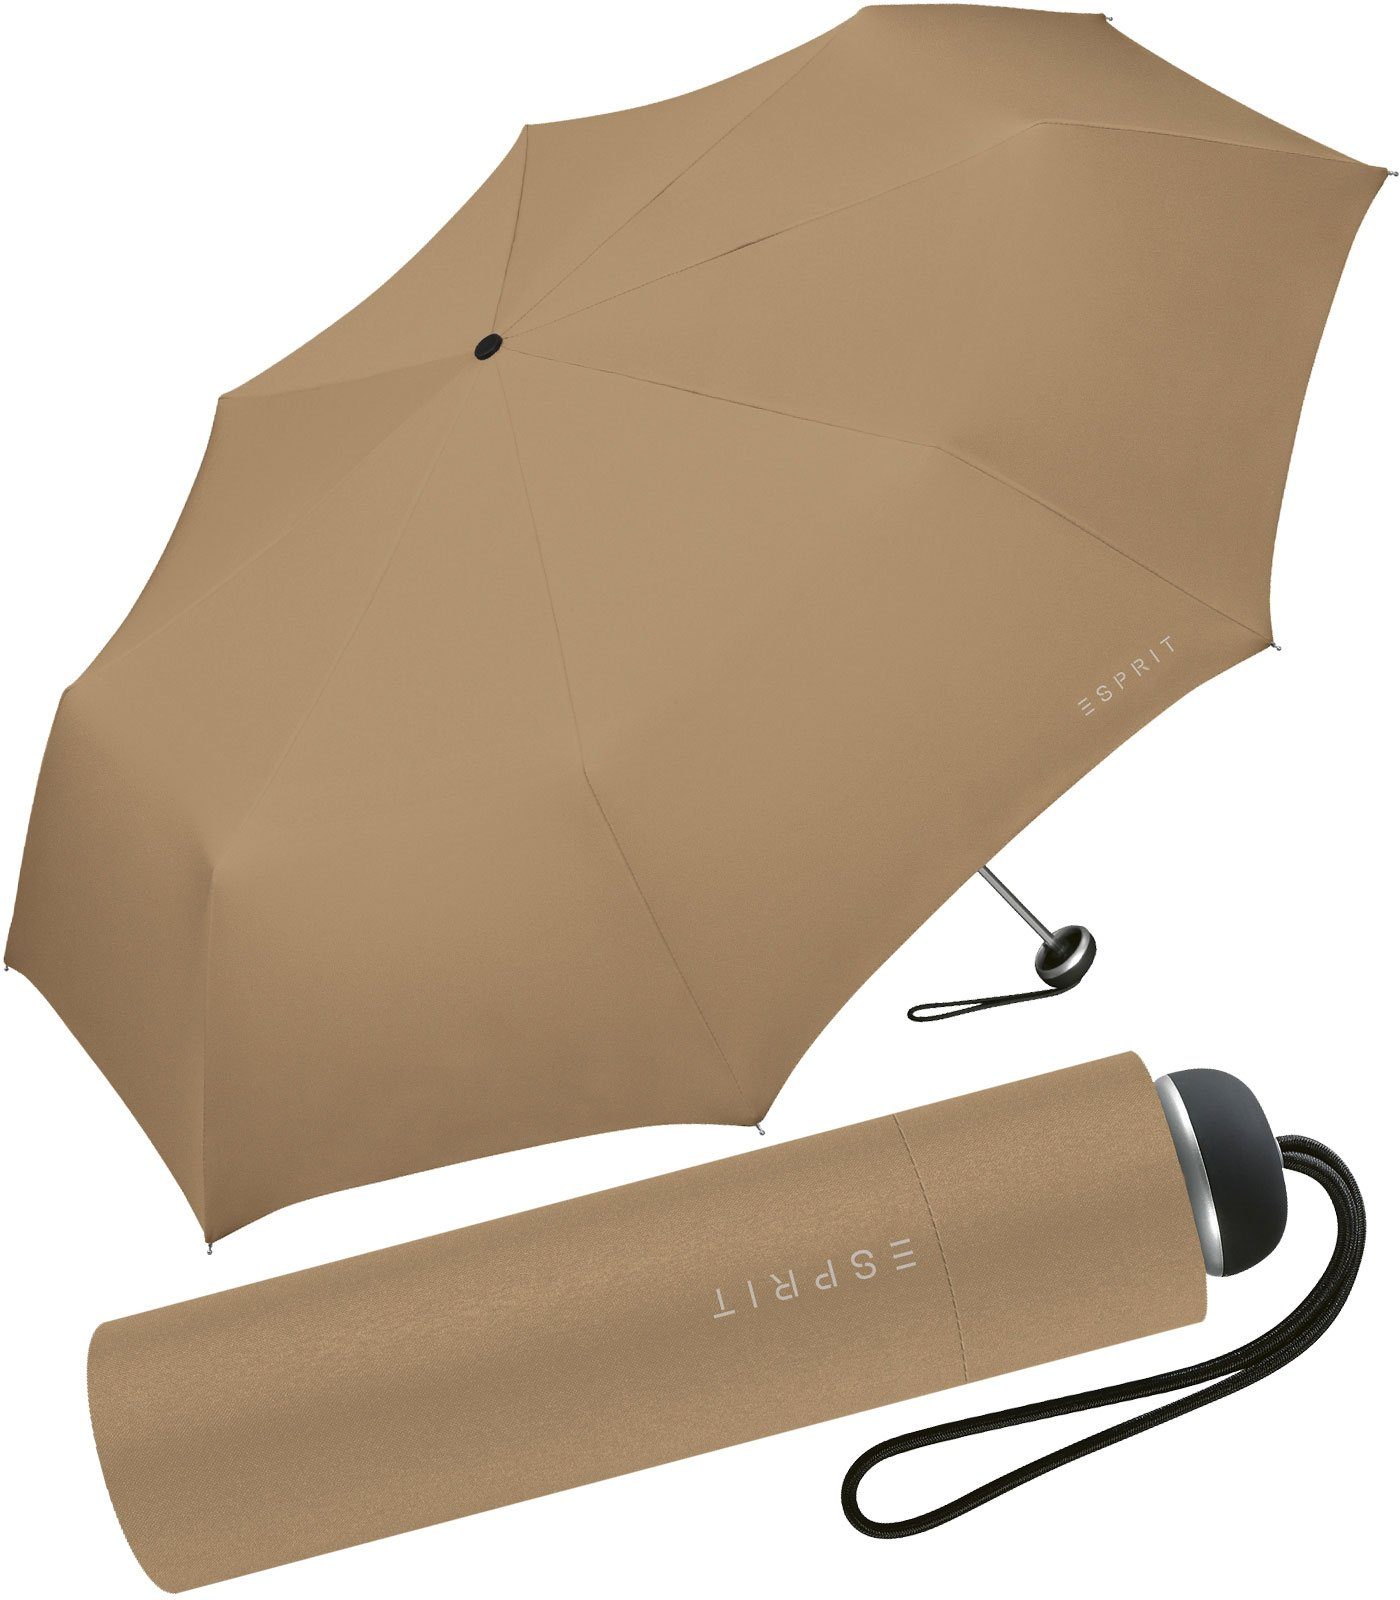 Esprit Taschenregenschirm leichter, handlicher Schirm für Damen, Begleiter in modischen Farben - chocolate malt braun